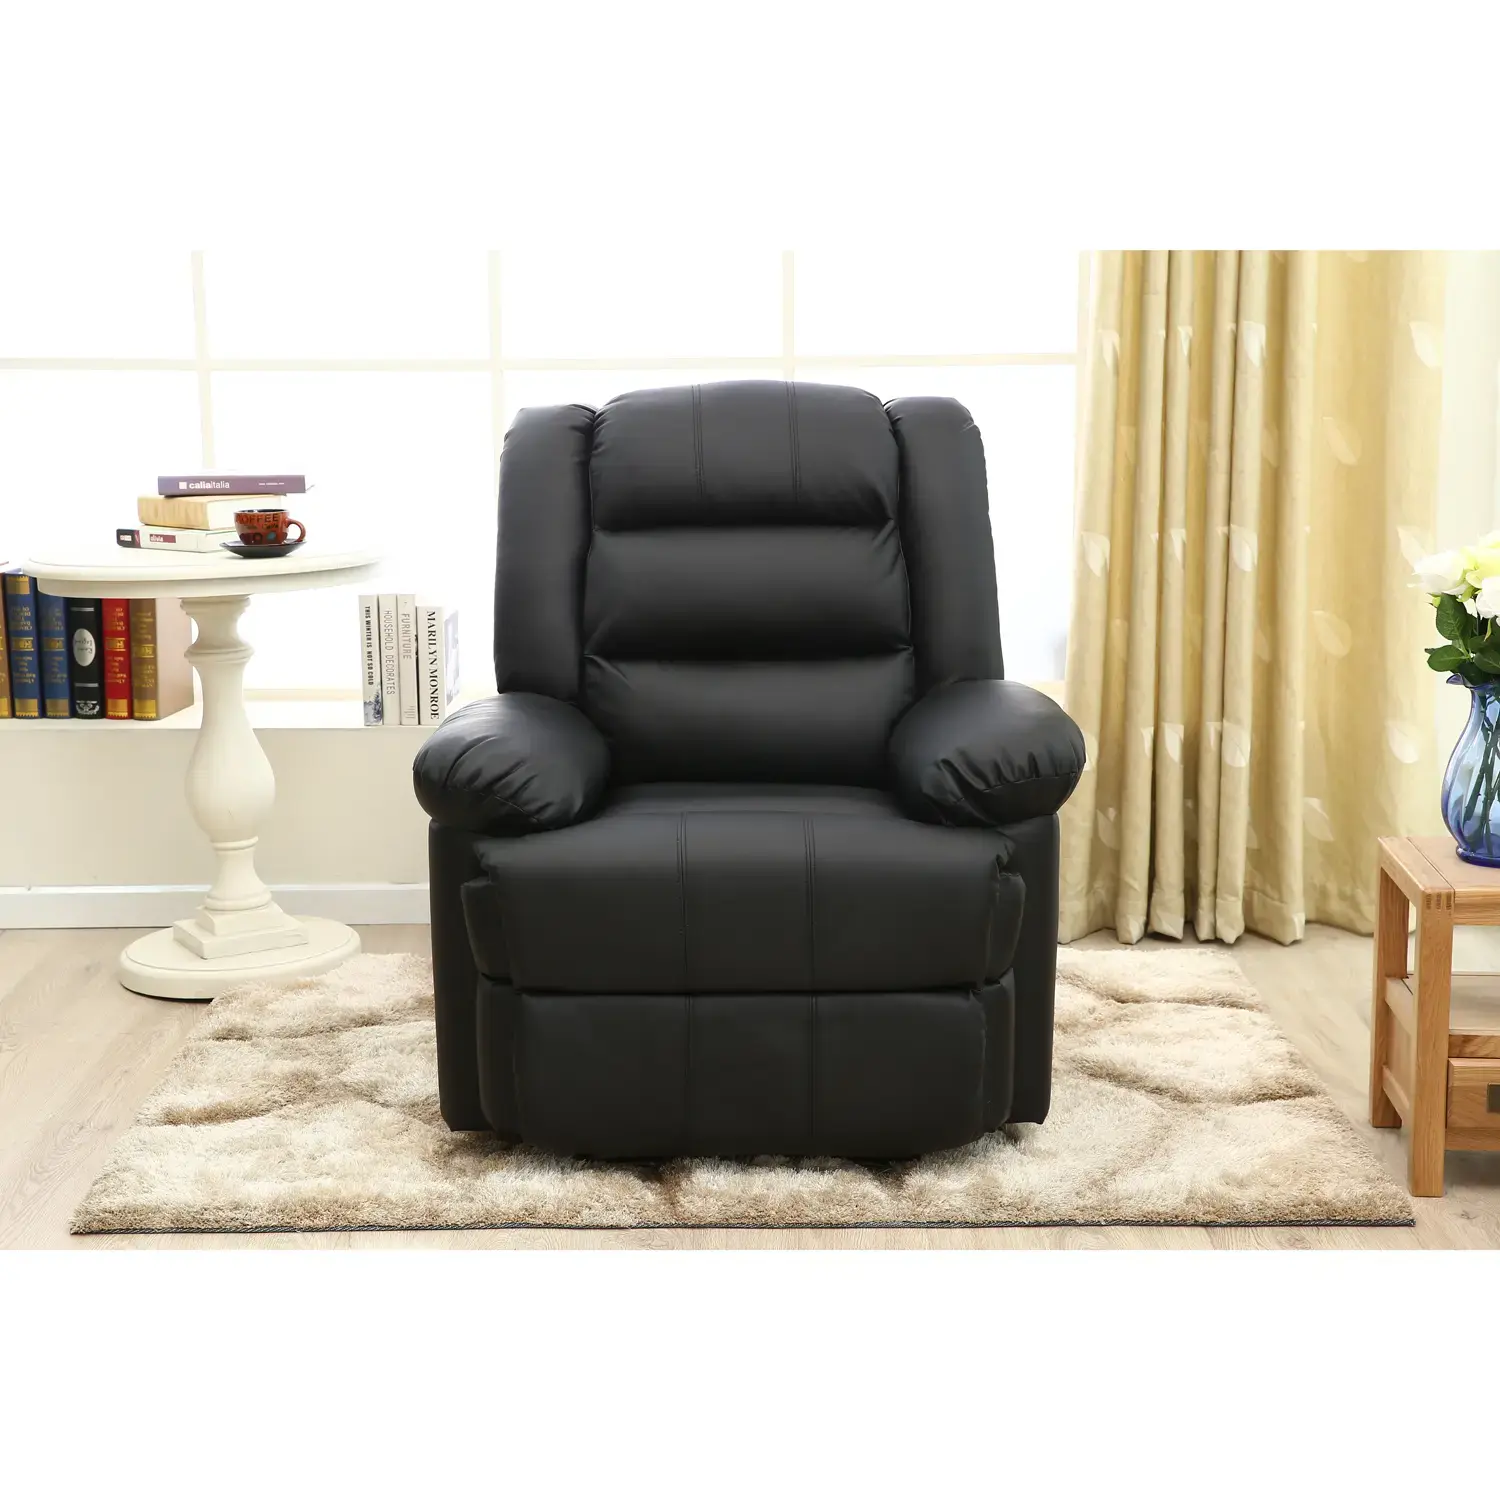 Fekvőfotel, relax fotelágy dönthető háttámlával, lábtartóval hinta funkcióval, fekete műbőr (PU-MA-SW-RO-BLACK)